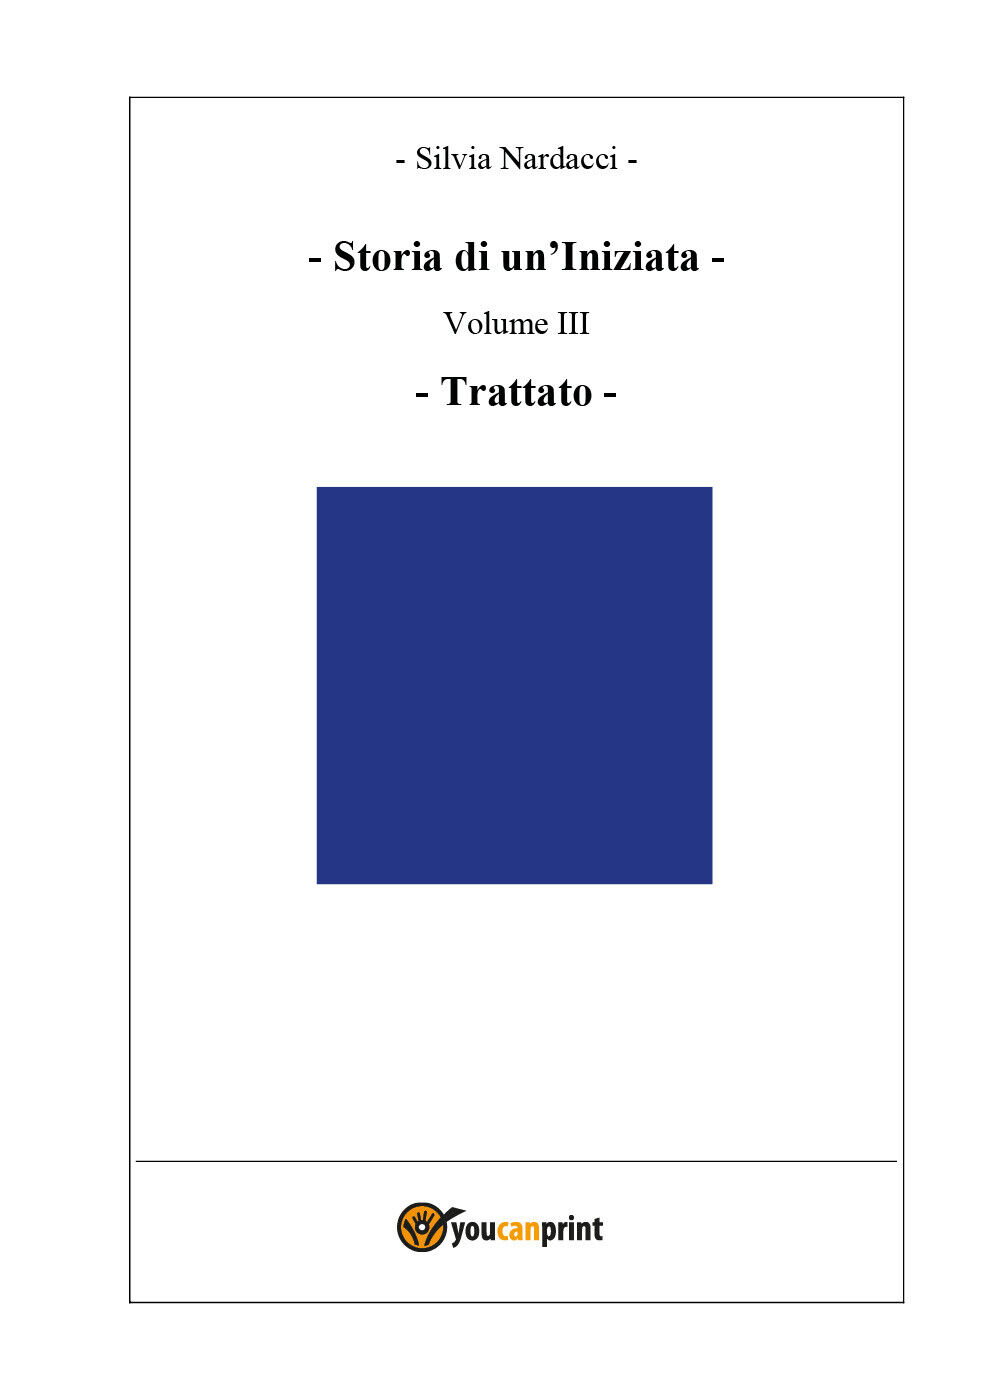 Storia di un?Iniziata - Volume III - Trattato di Silvia Nardacci,  2018,  Youcan